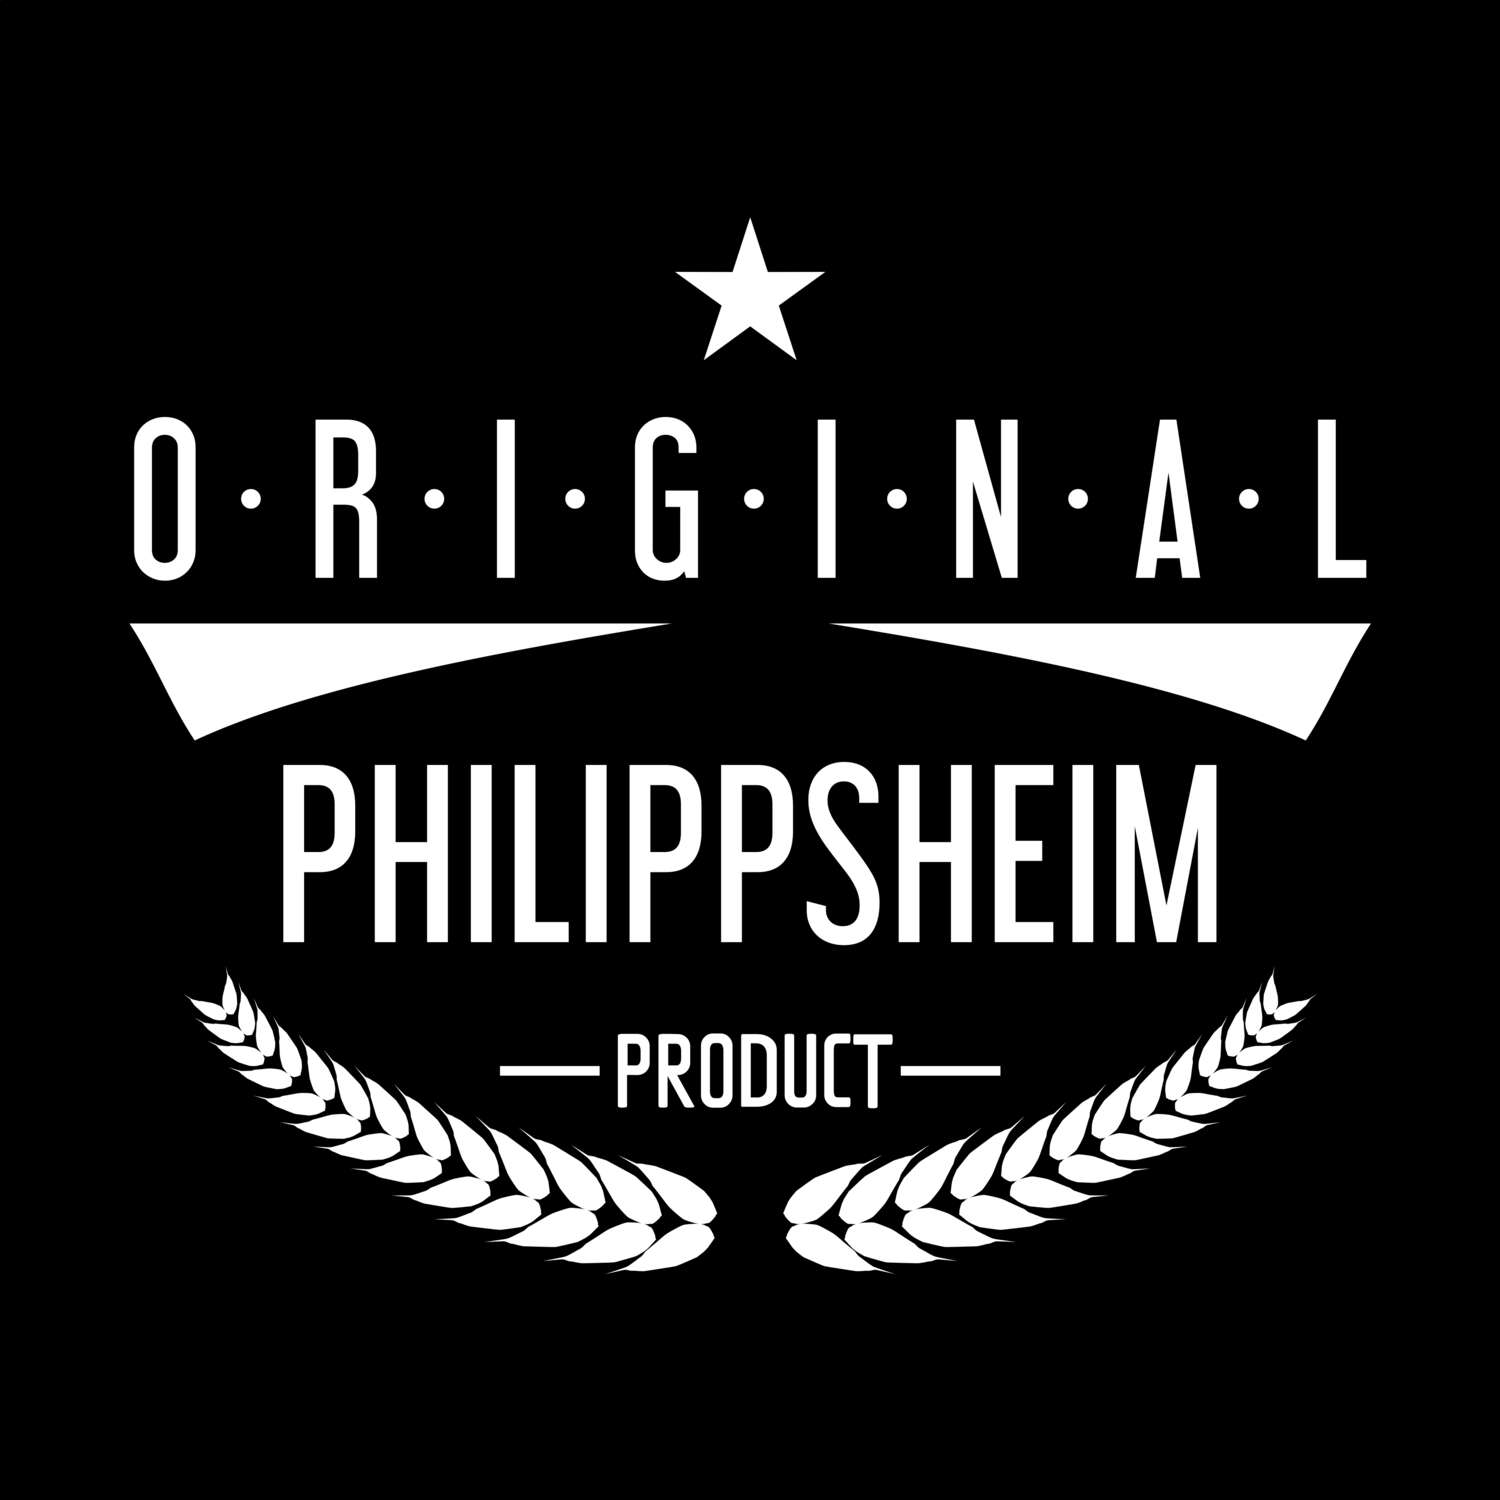 Philippsheim T-Shirt »Original Product«